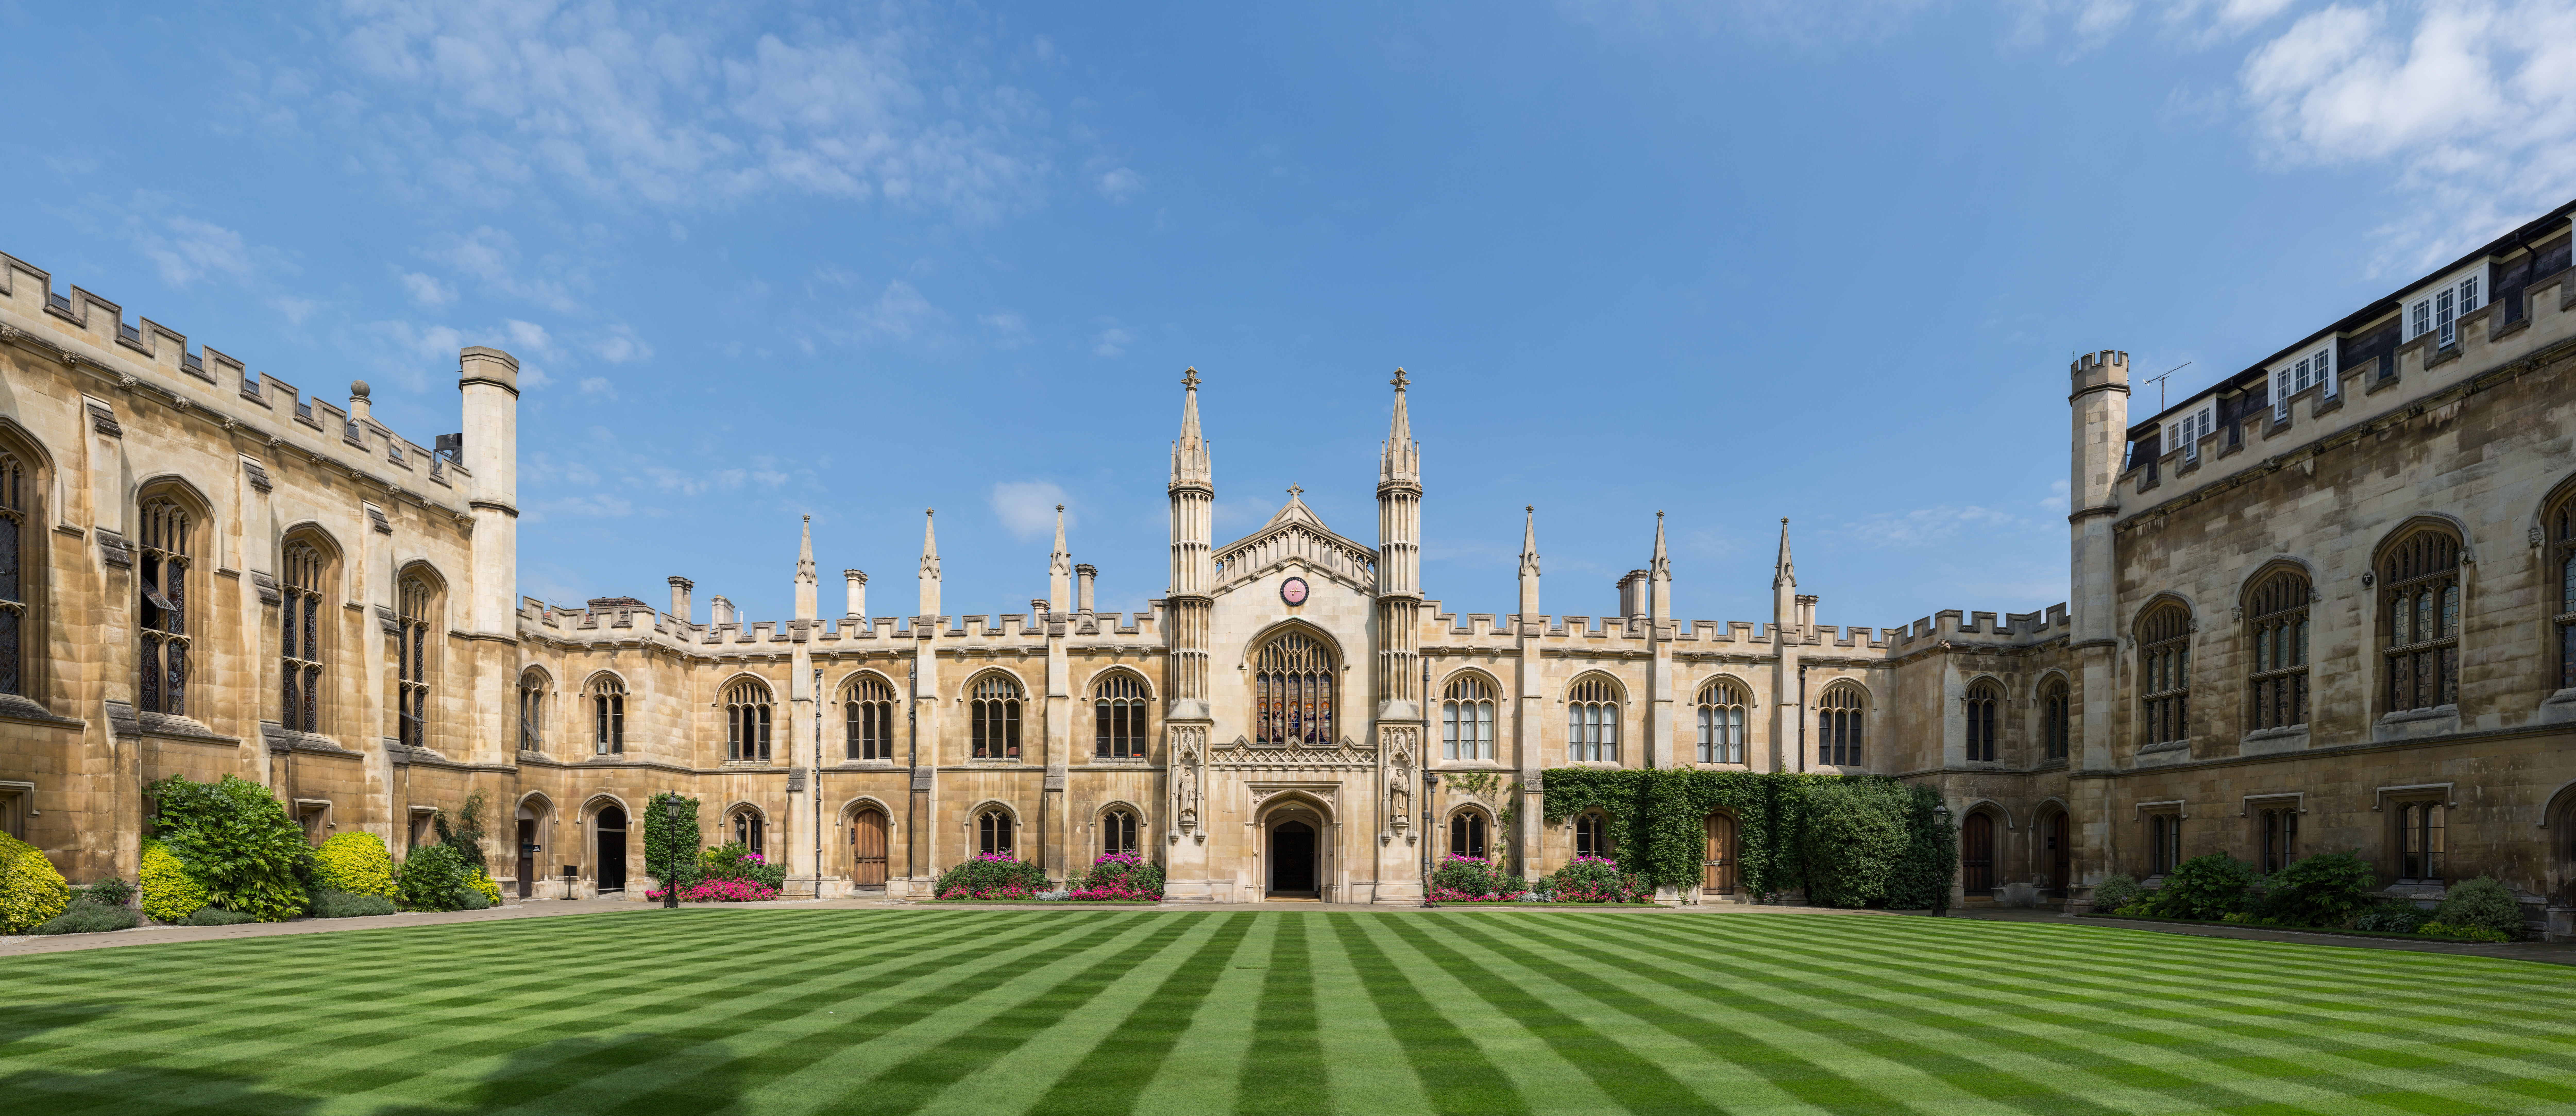 Cambridge-é-uma-das-melhores-universidades-do-reino-unido